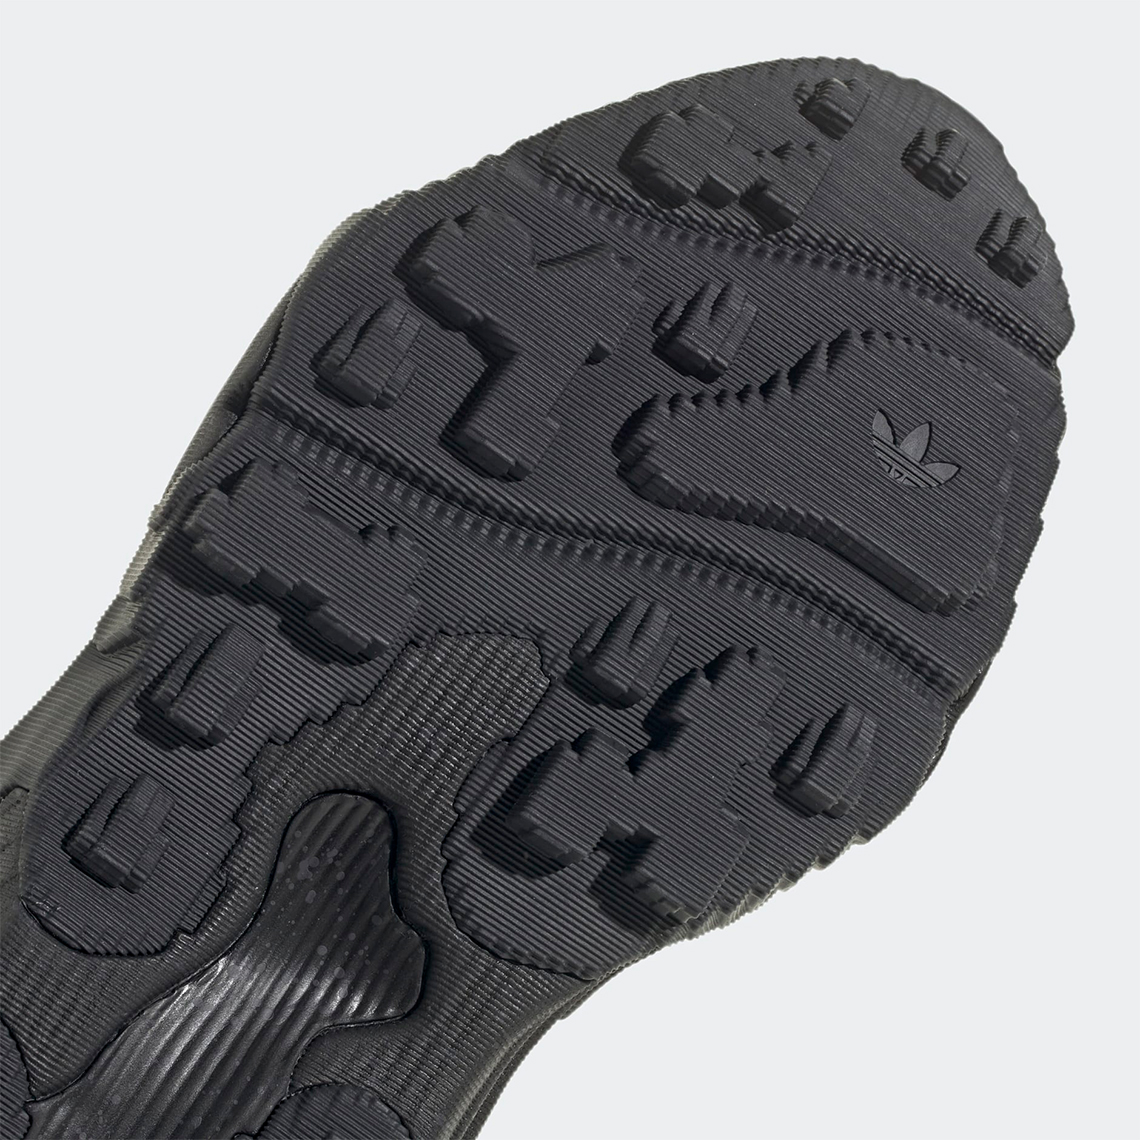 adidas Rovermule Adventure Core Black Carbon Grey GW1845 6